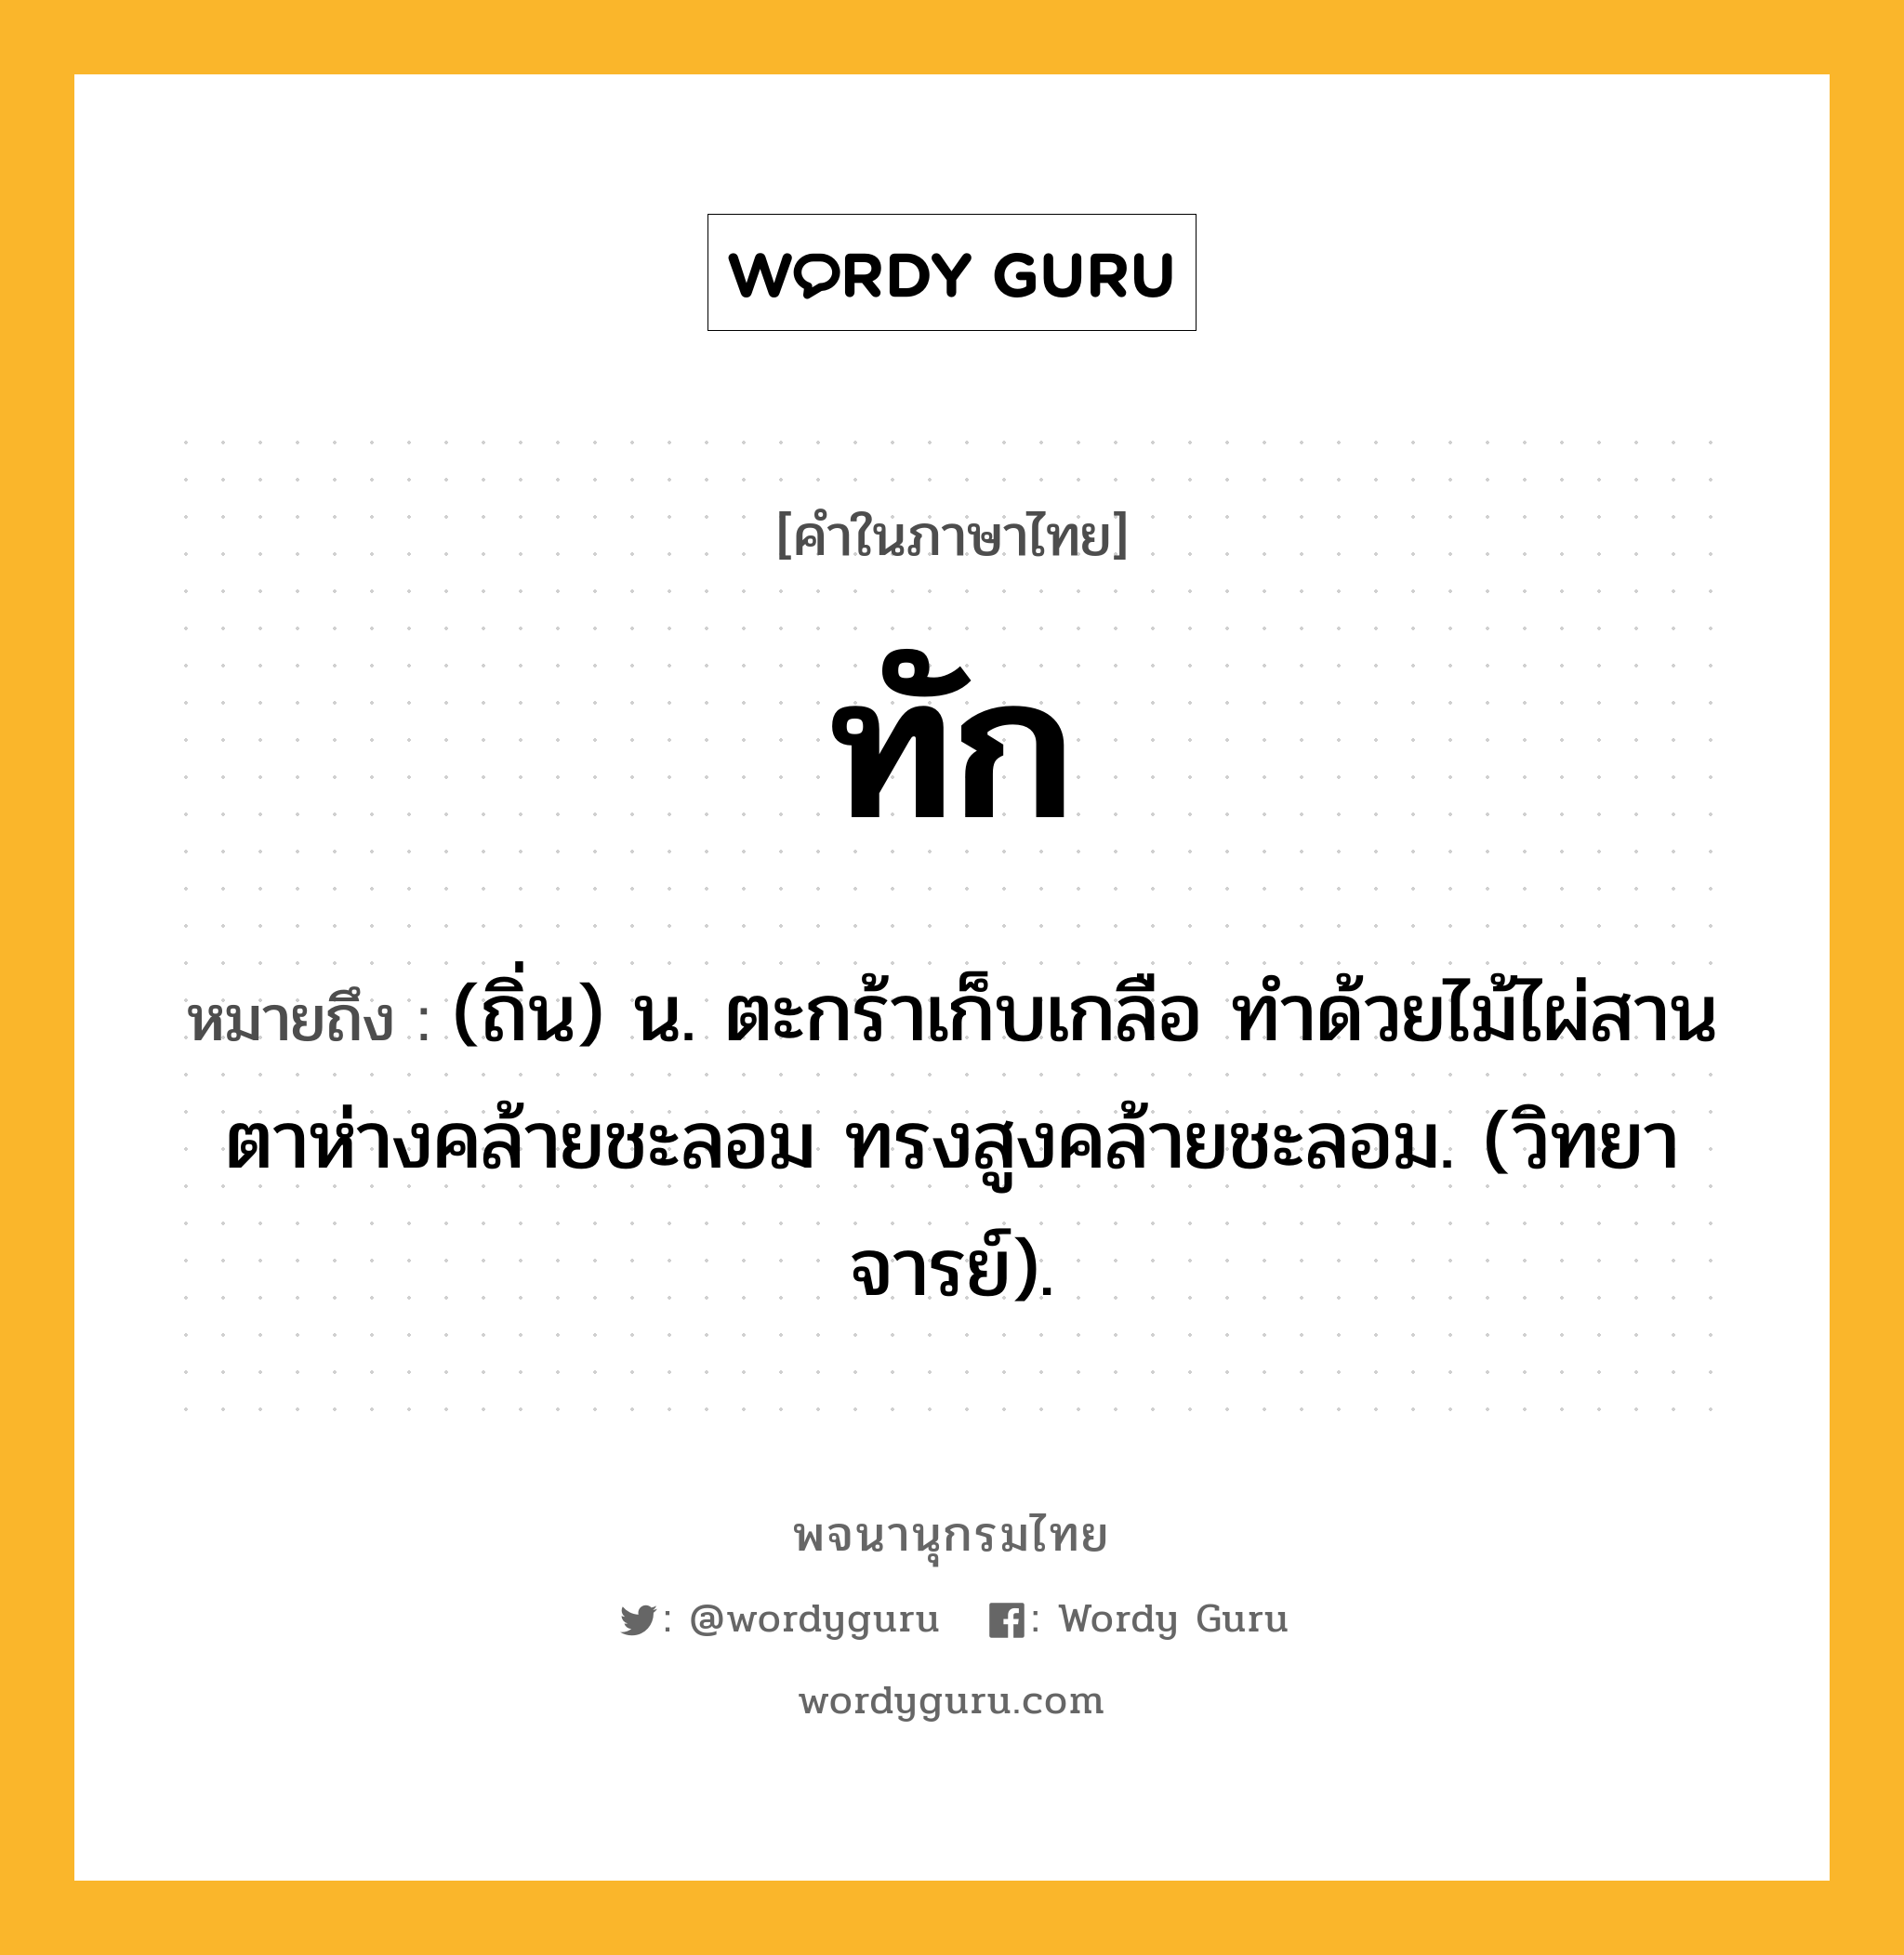 ทัก ความหมาย หมายถึงอะไร?, คำในภาษาไทย ทัก หมายถึง (ถิ่น) น. ตะกร้าเก็บเกลือ ทําด้วยไม้ไผ่สาน ตาห่างคล้ายชะลอม ทรงสูงคล้ายชะลอม. (วิทยาจารย์).